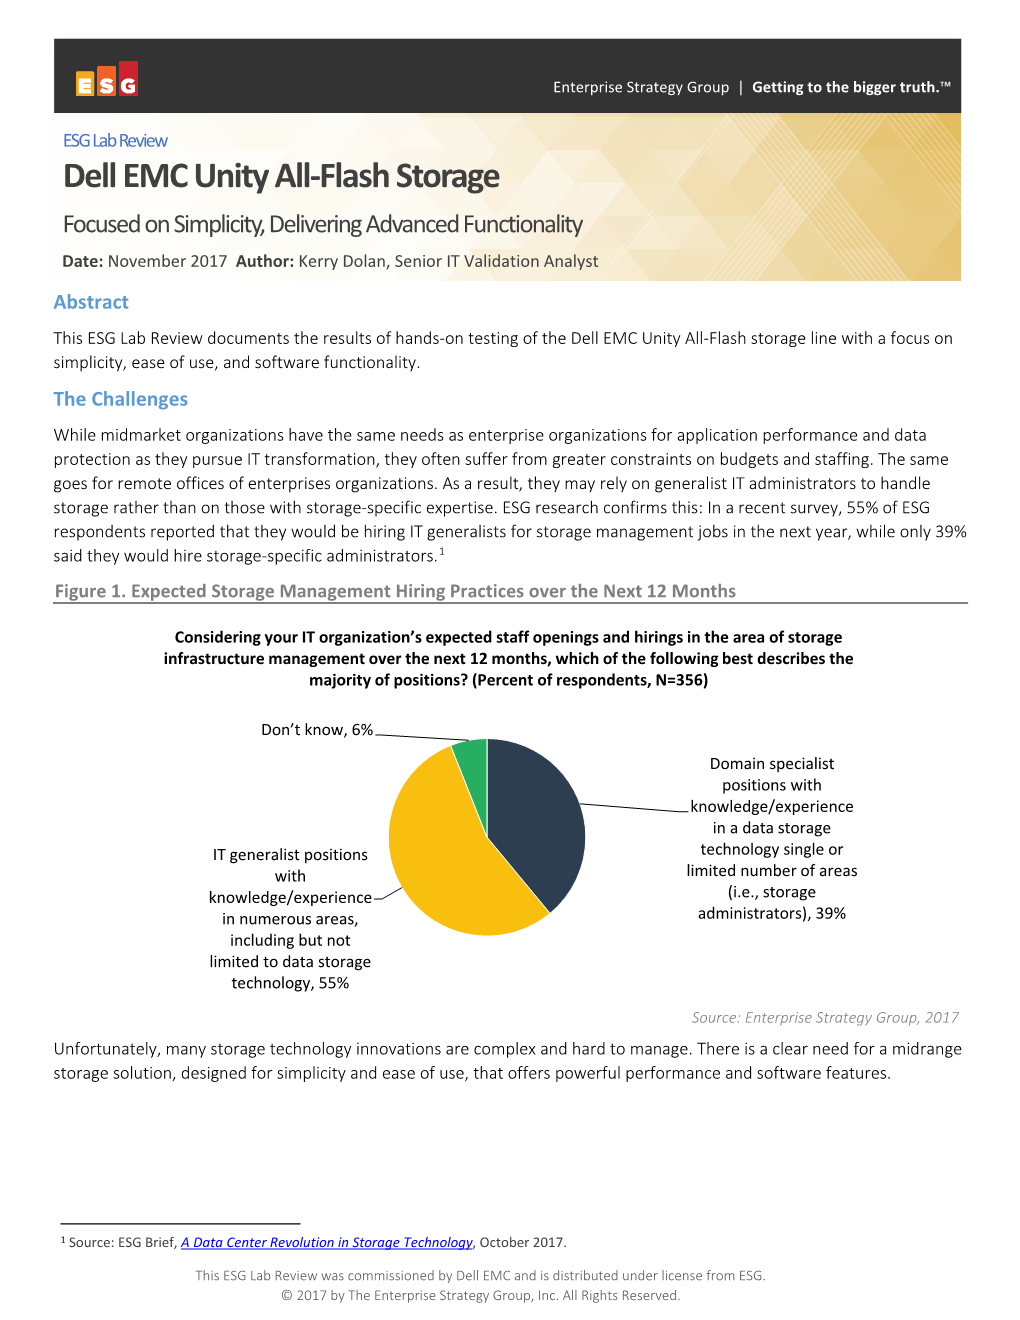 Dell EMC Unity All-Flash Storage